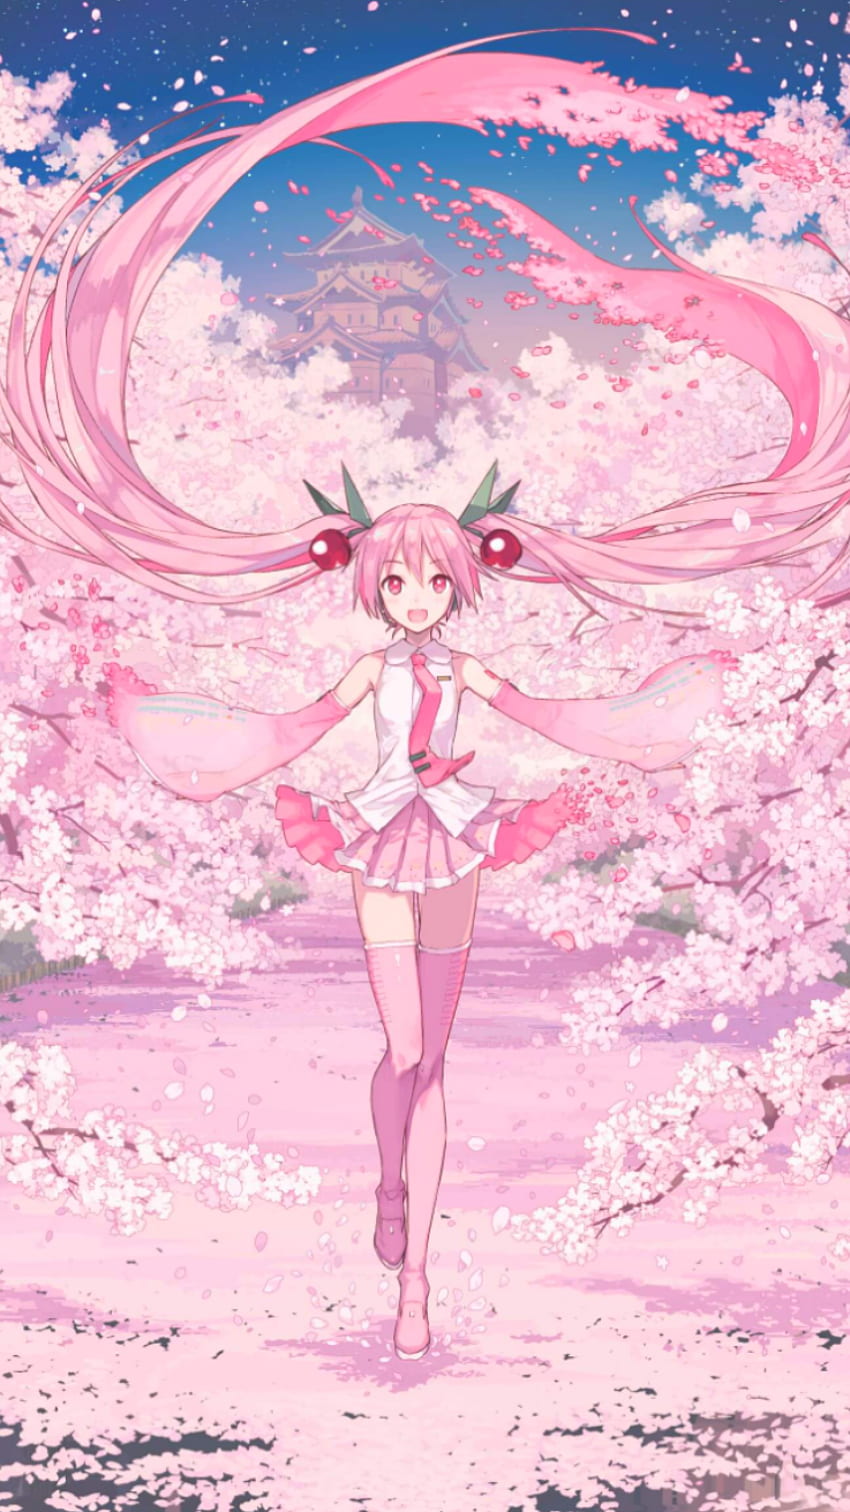 Luna's Anime, Sakura Hatsune Miku Papel de parede de celular HD